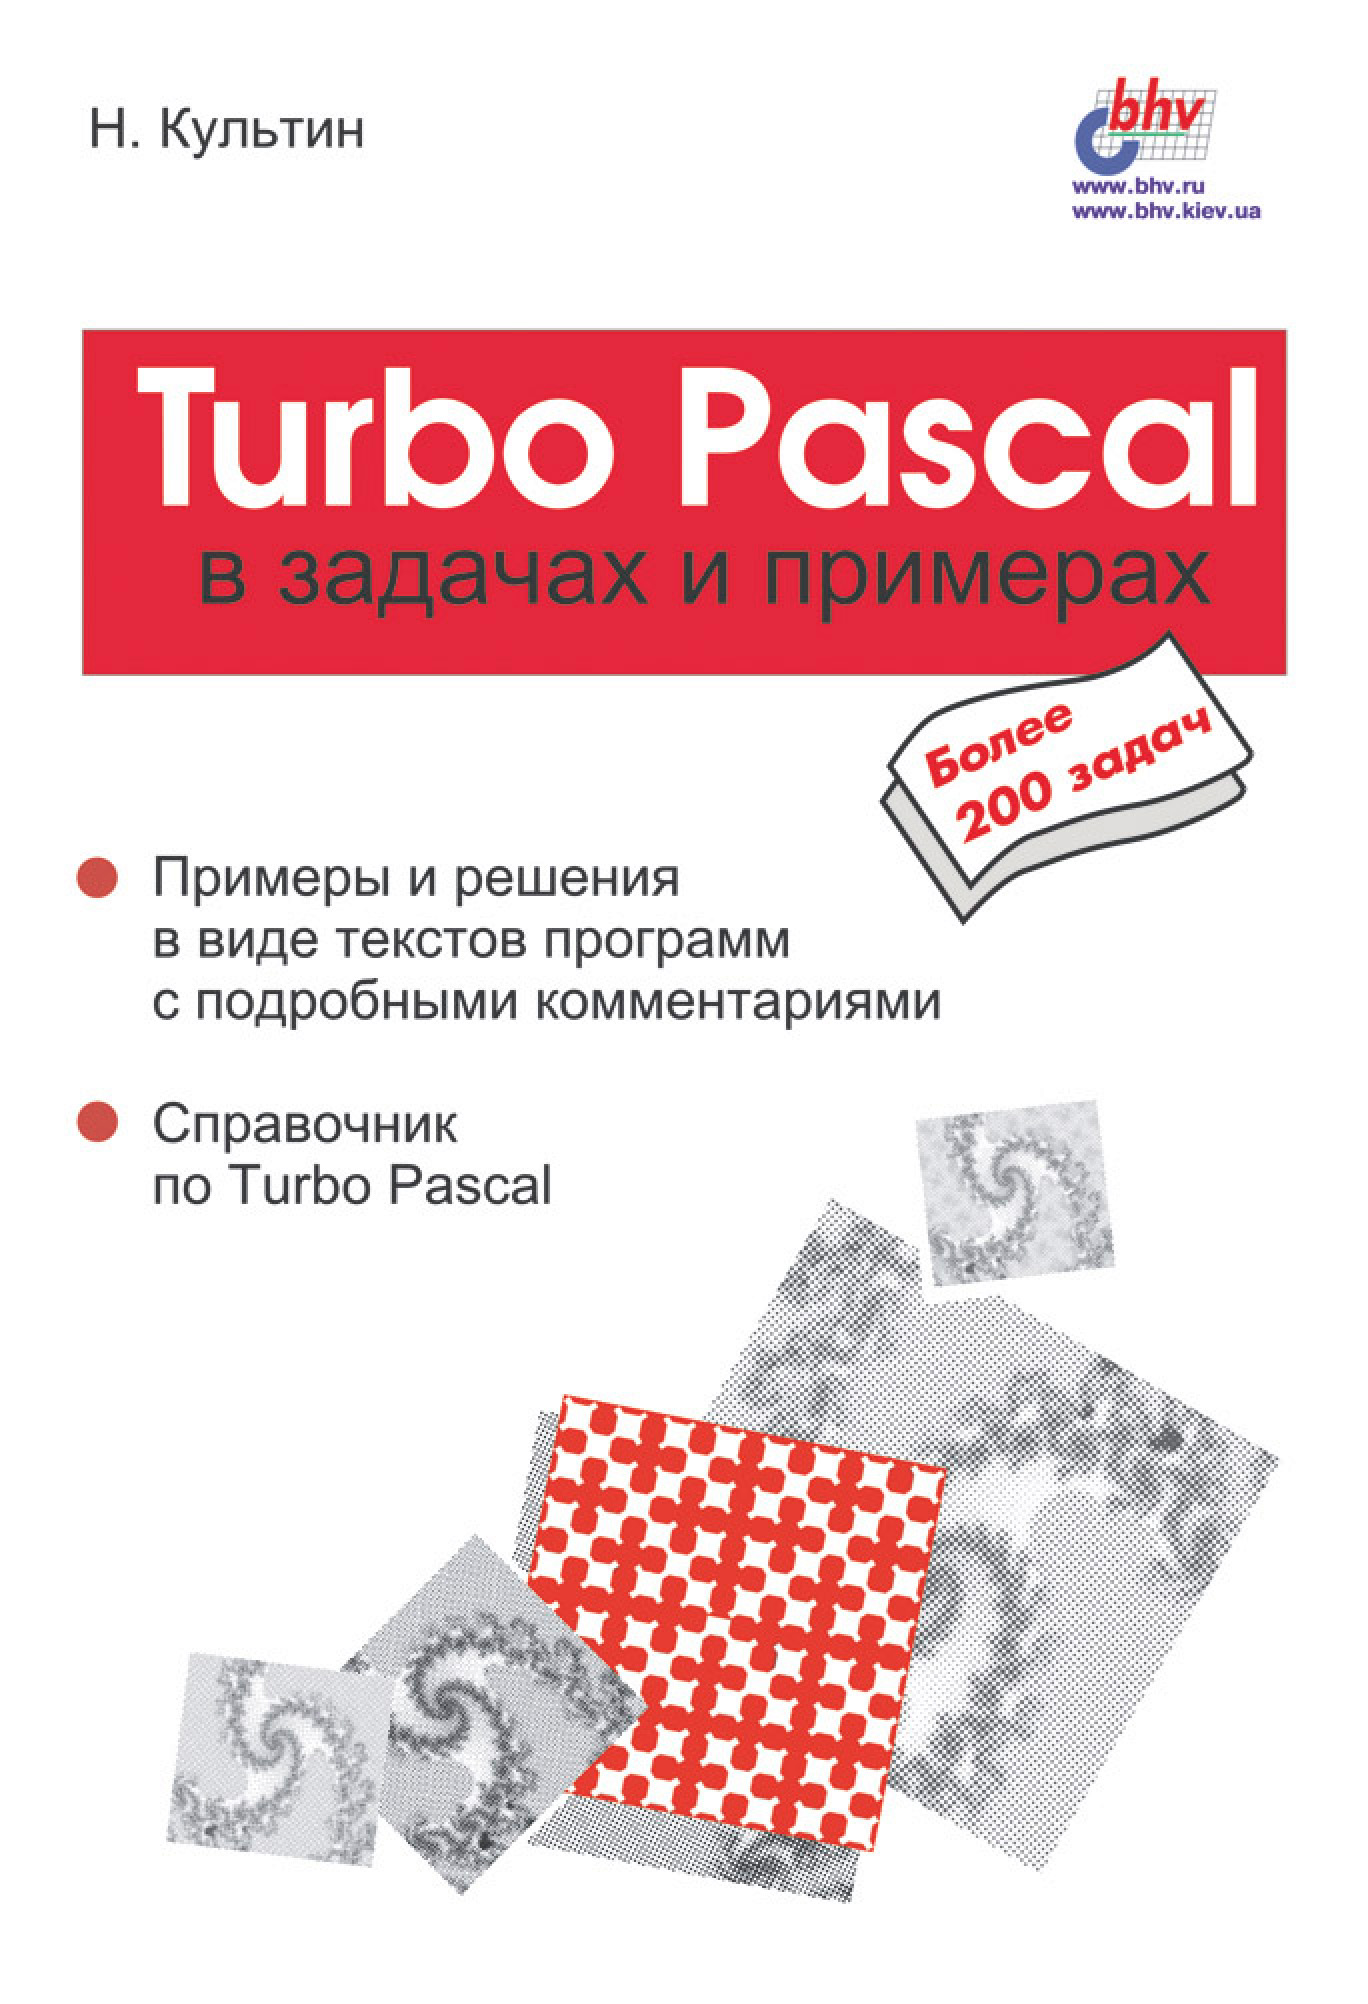 Книга В задачах и примерах Turbo Pascal в задачах и примерах созданная Никита Культин может относится к жанру программирование, руководства. Стоимость электронной книги Turbo Pascal в задачах и примерах с идентификатором 6986797 составляет 103.00 руб.